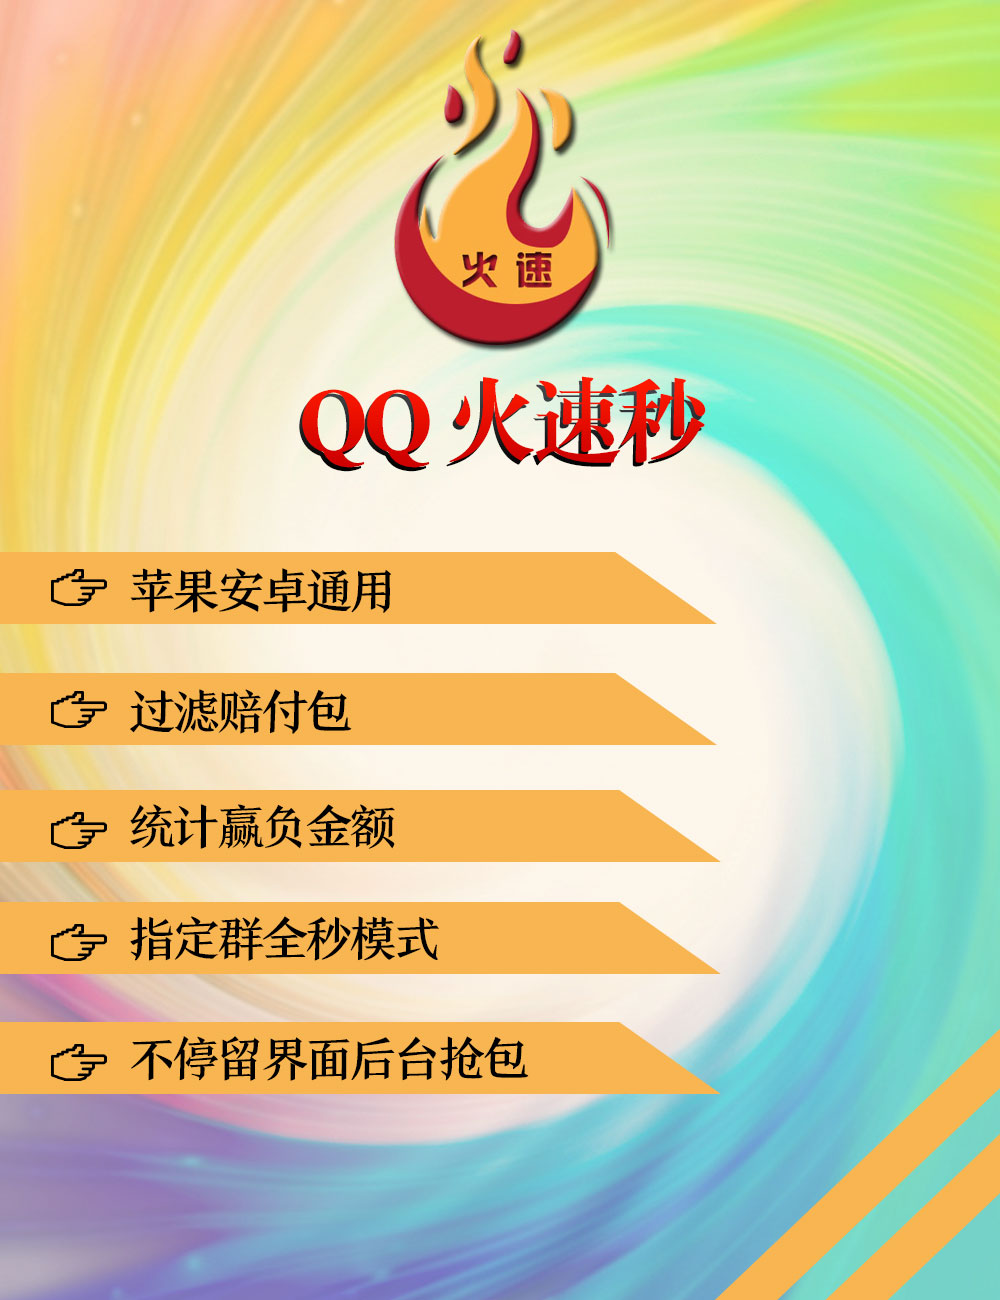 【QQ火速秒】永久卡苹果安卓通用一开关联8个号QQ秒抢红包 加QQ1731232333人工购买此产品